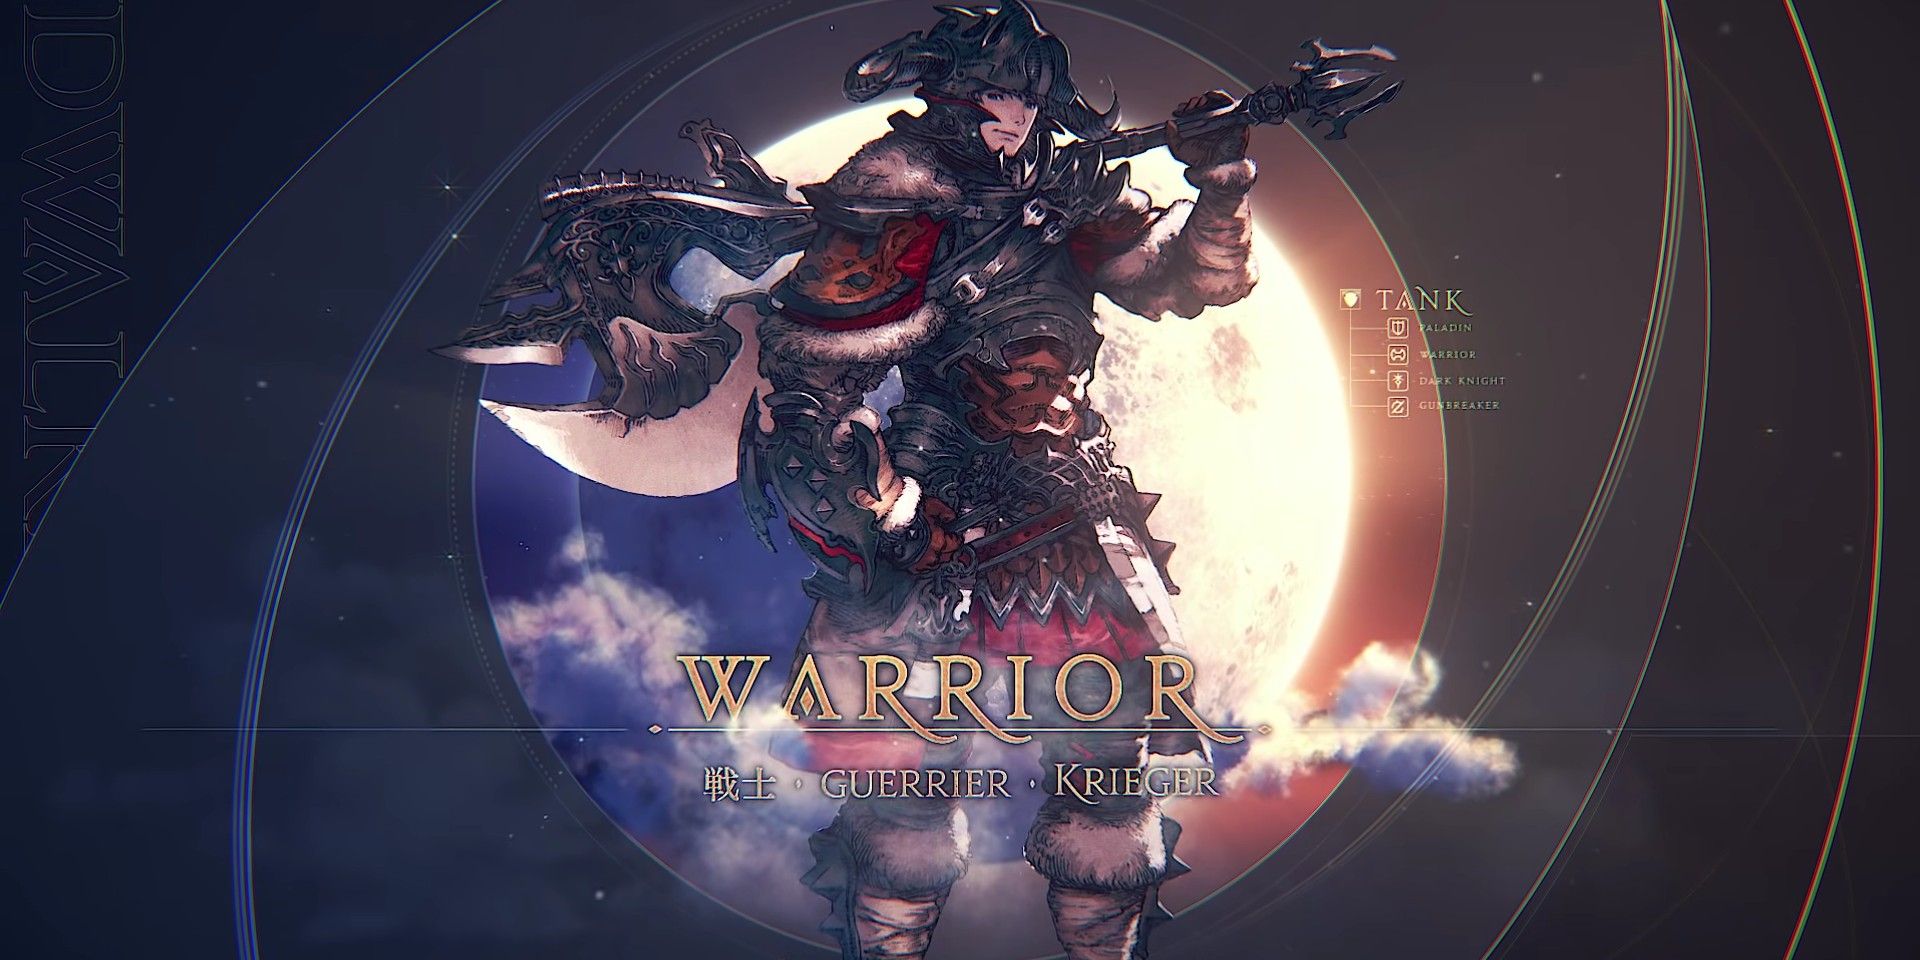 Final Fantasy XIV Endwalker Warrior In Job Changes Video